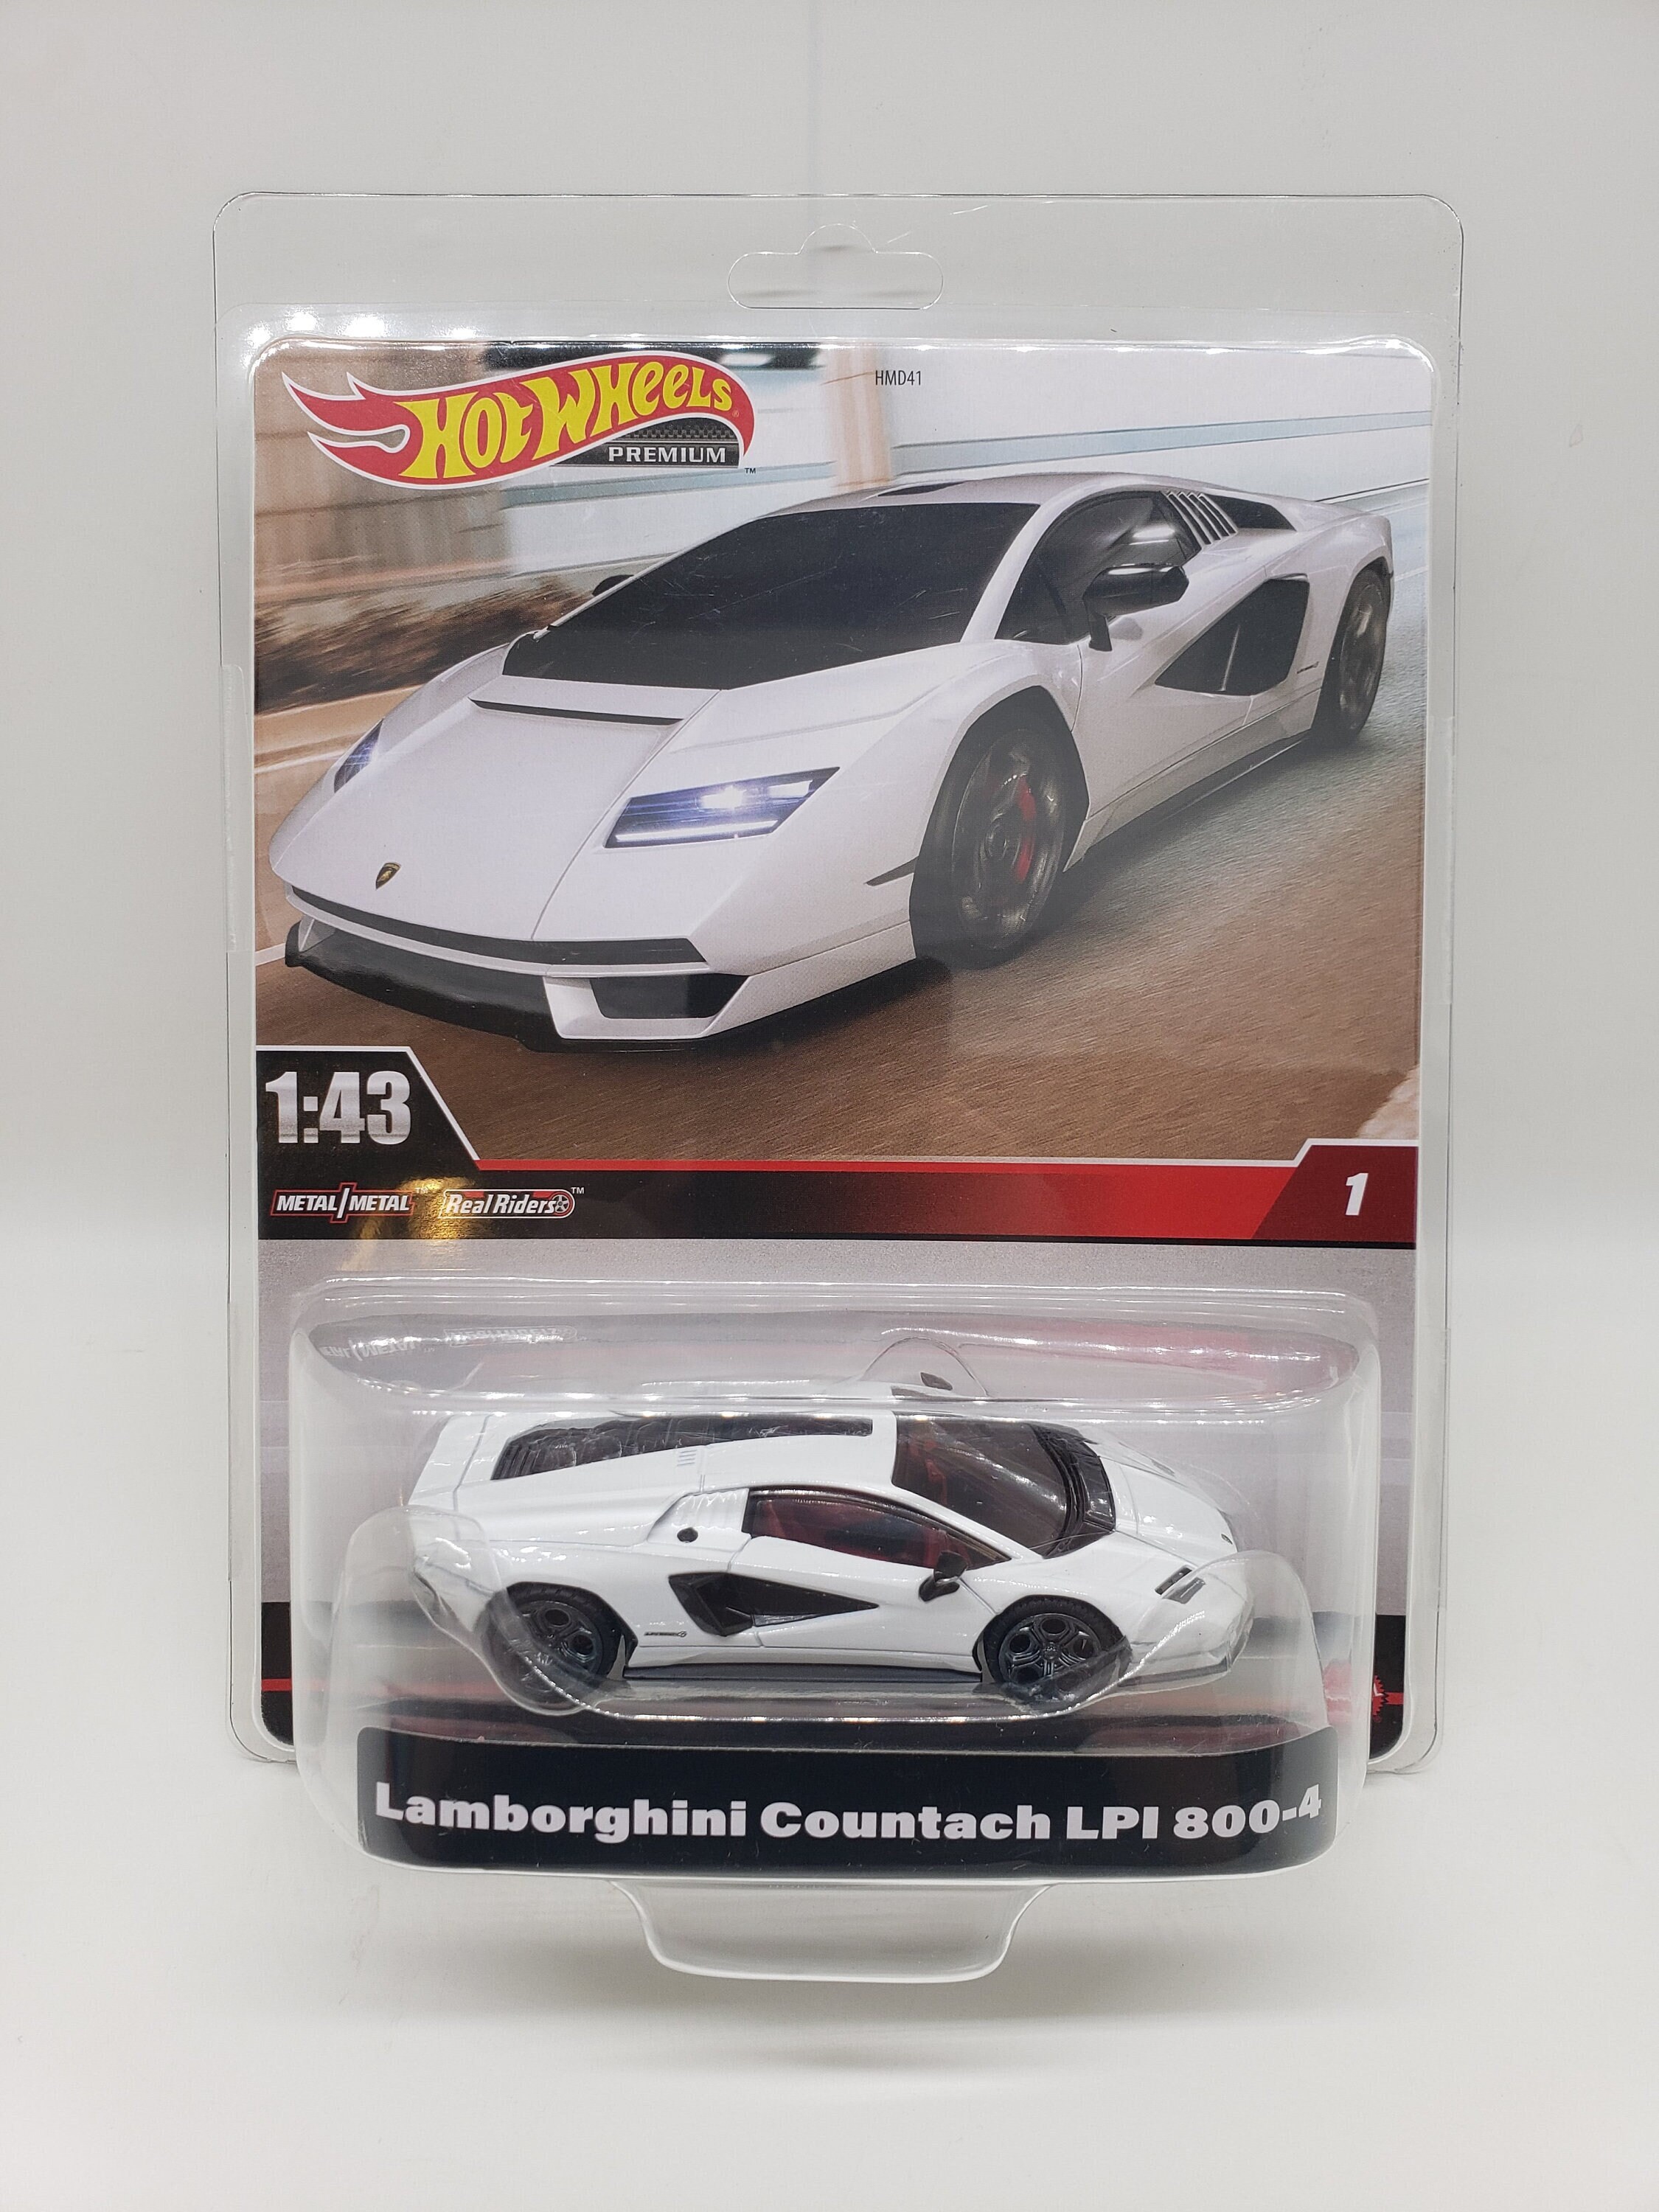 Hot Wheels Premium Lamborghini Countach Lpi 800-4 - 1:43 Scale